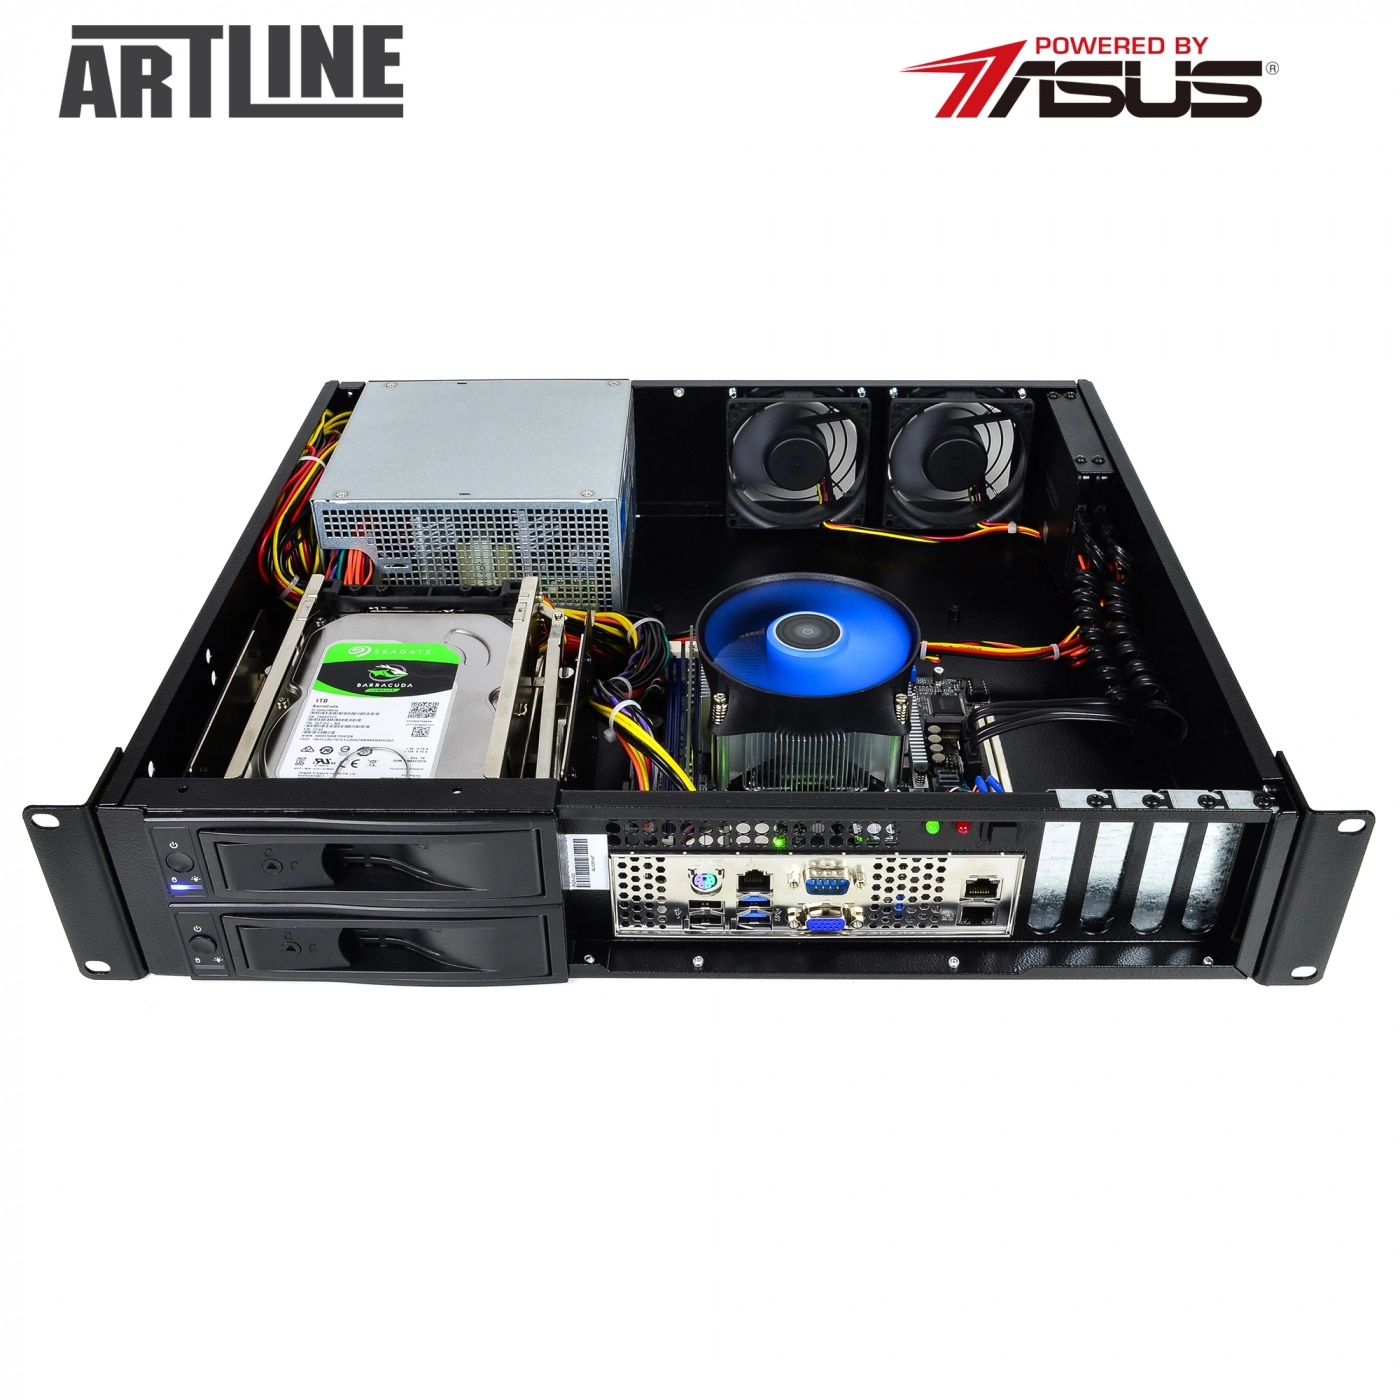 Купить Сервер ARTLINE Business R25v05 - фото 10